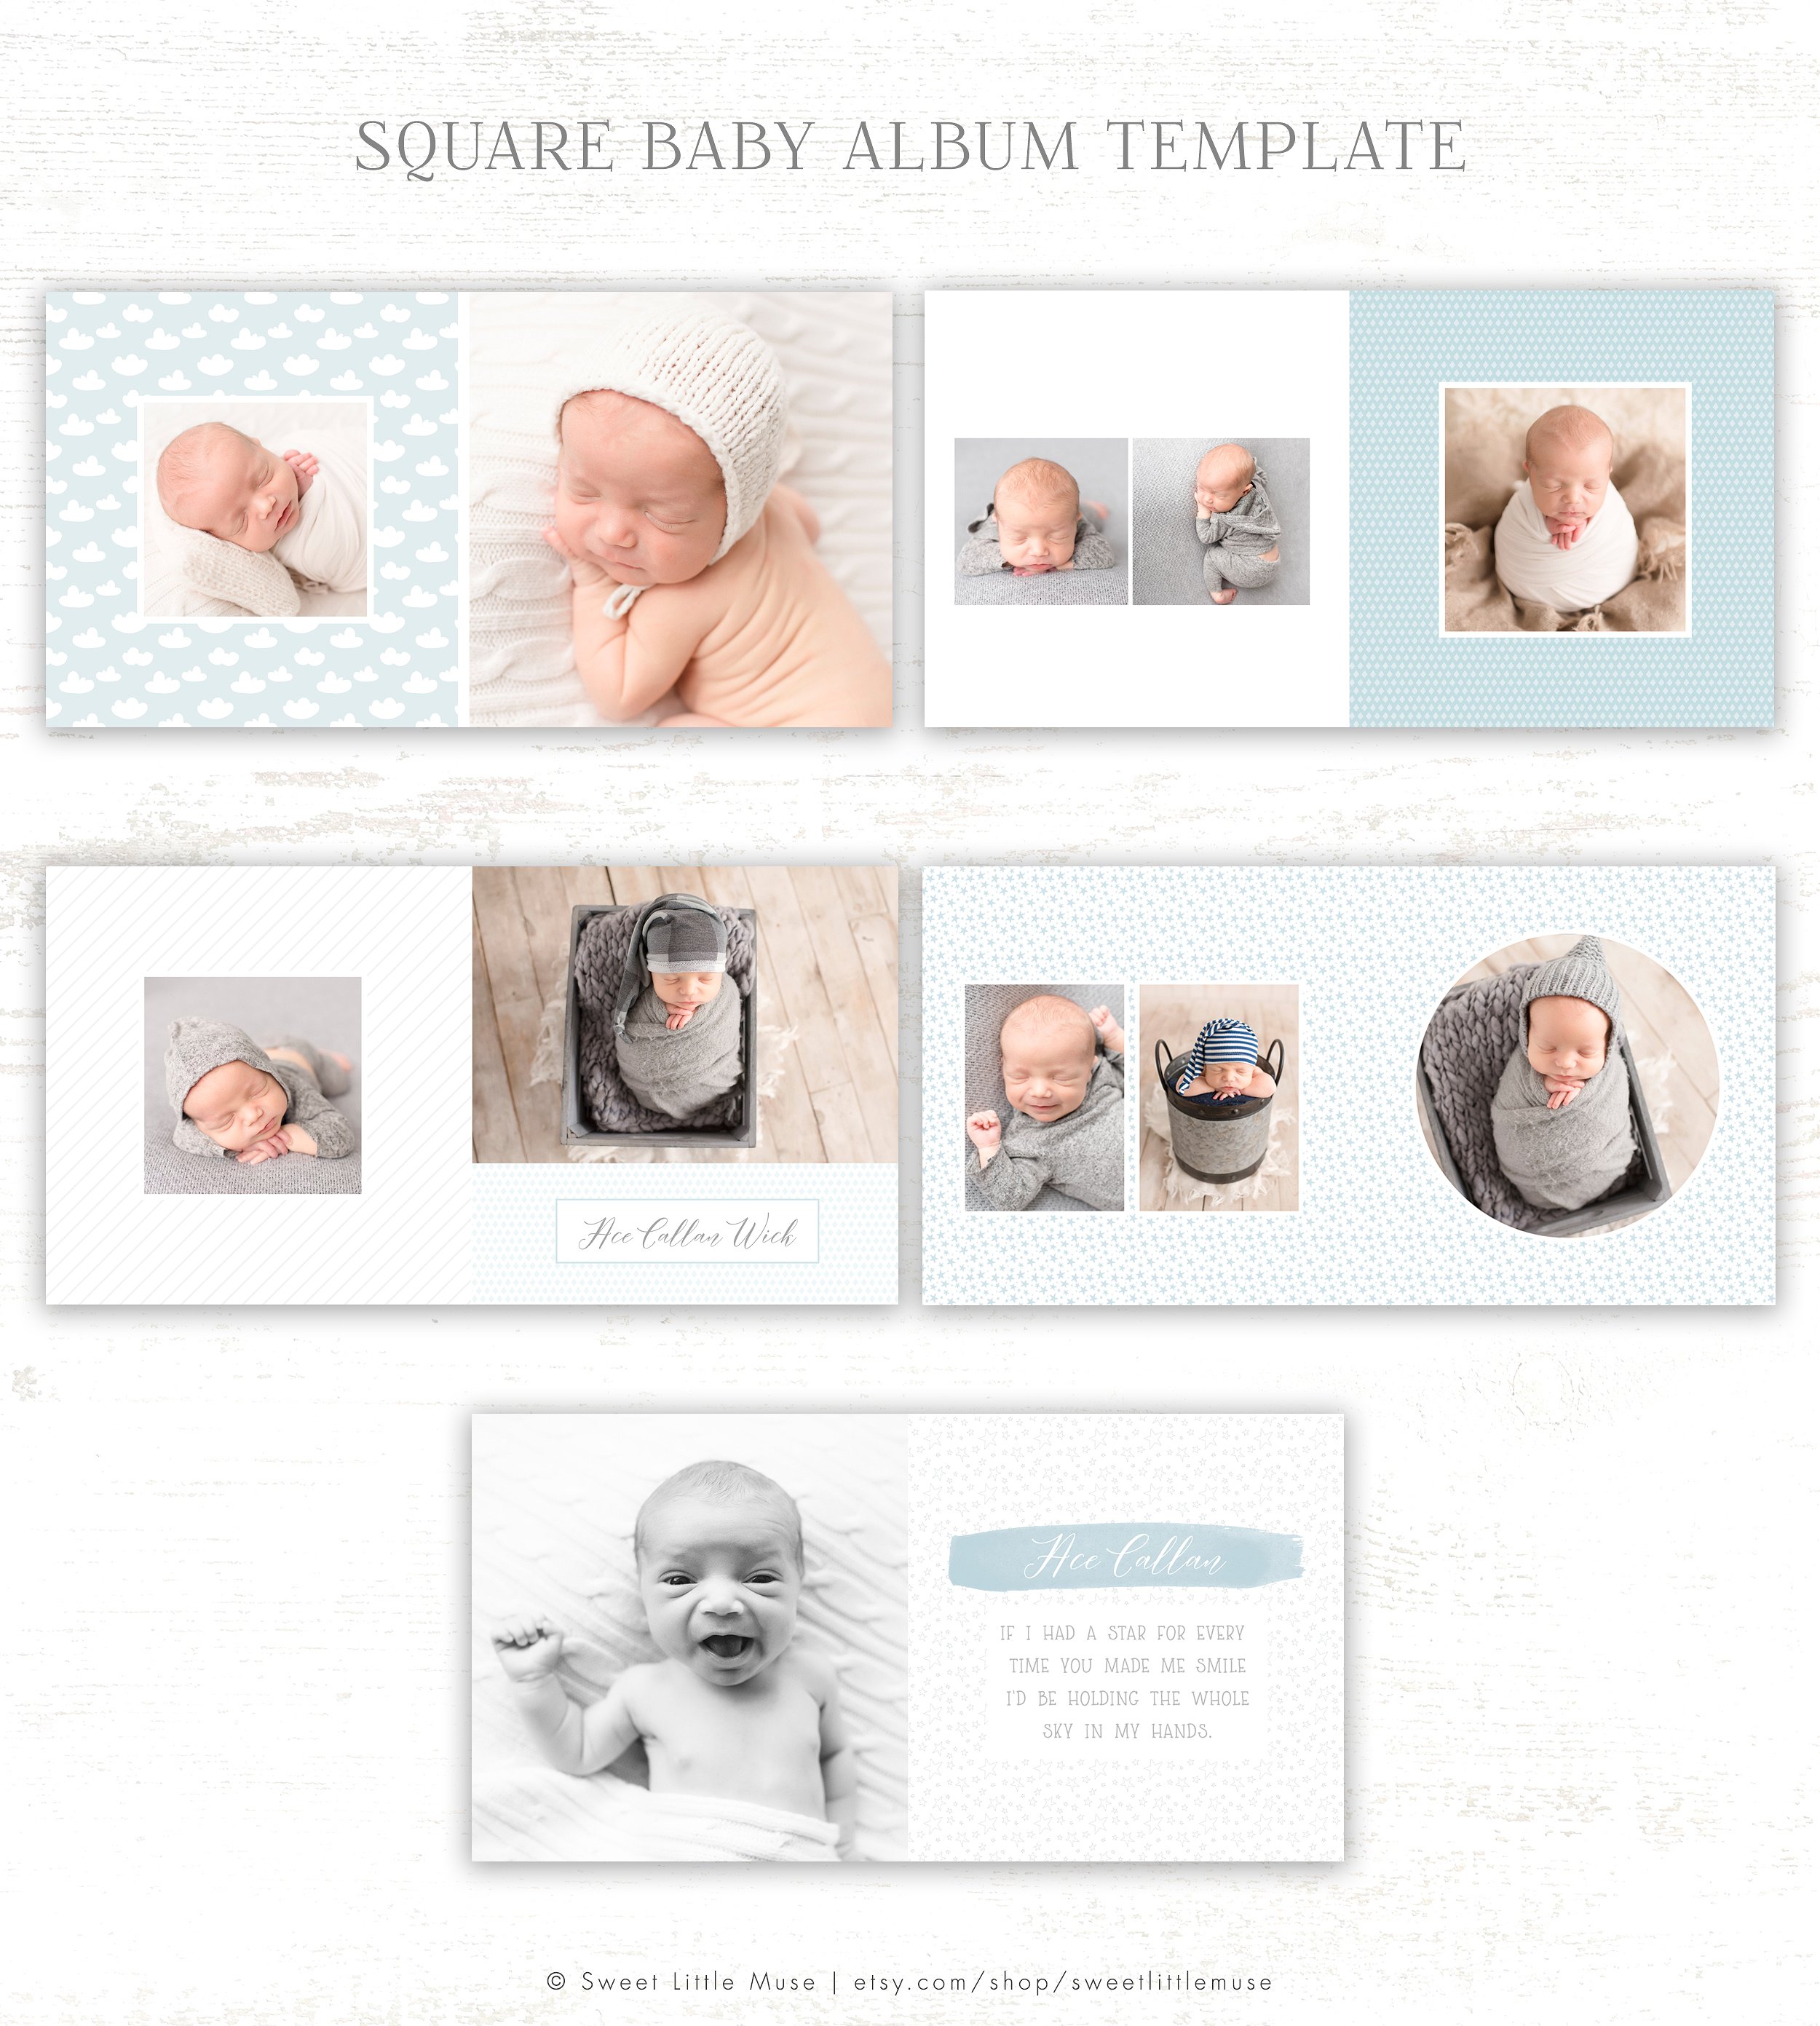 初生婴儿艺术照相册模板 Baby Boy Album Template插图(1)